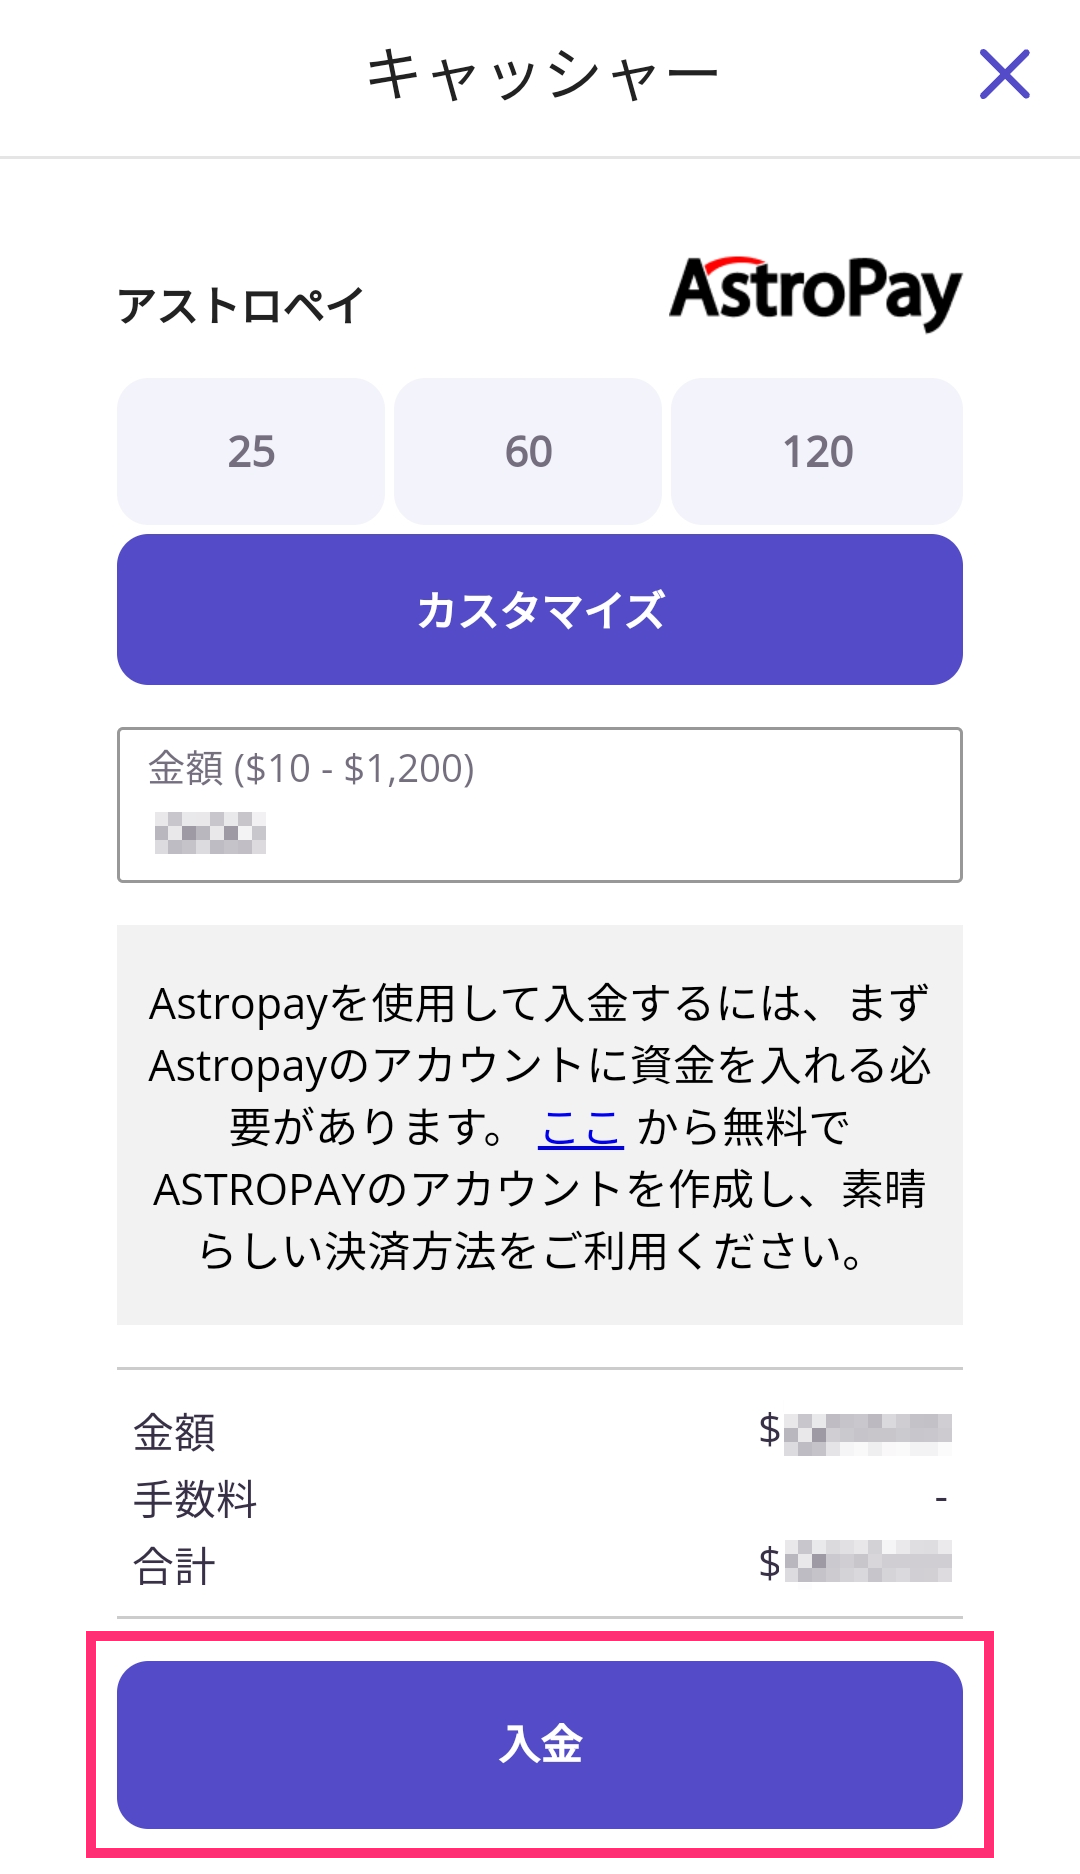 【カジノデイズ】アストロペイ（Astropay）入出金｜限度額や注意点を徹底解説！